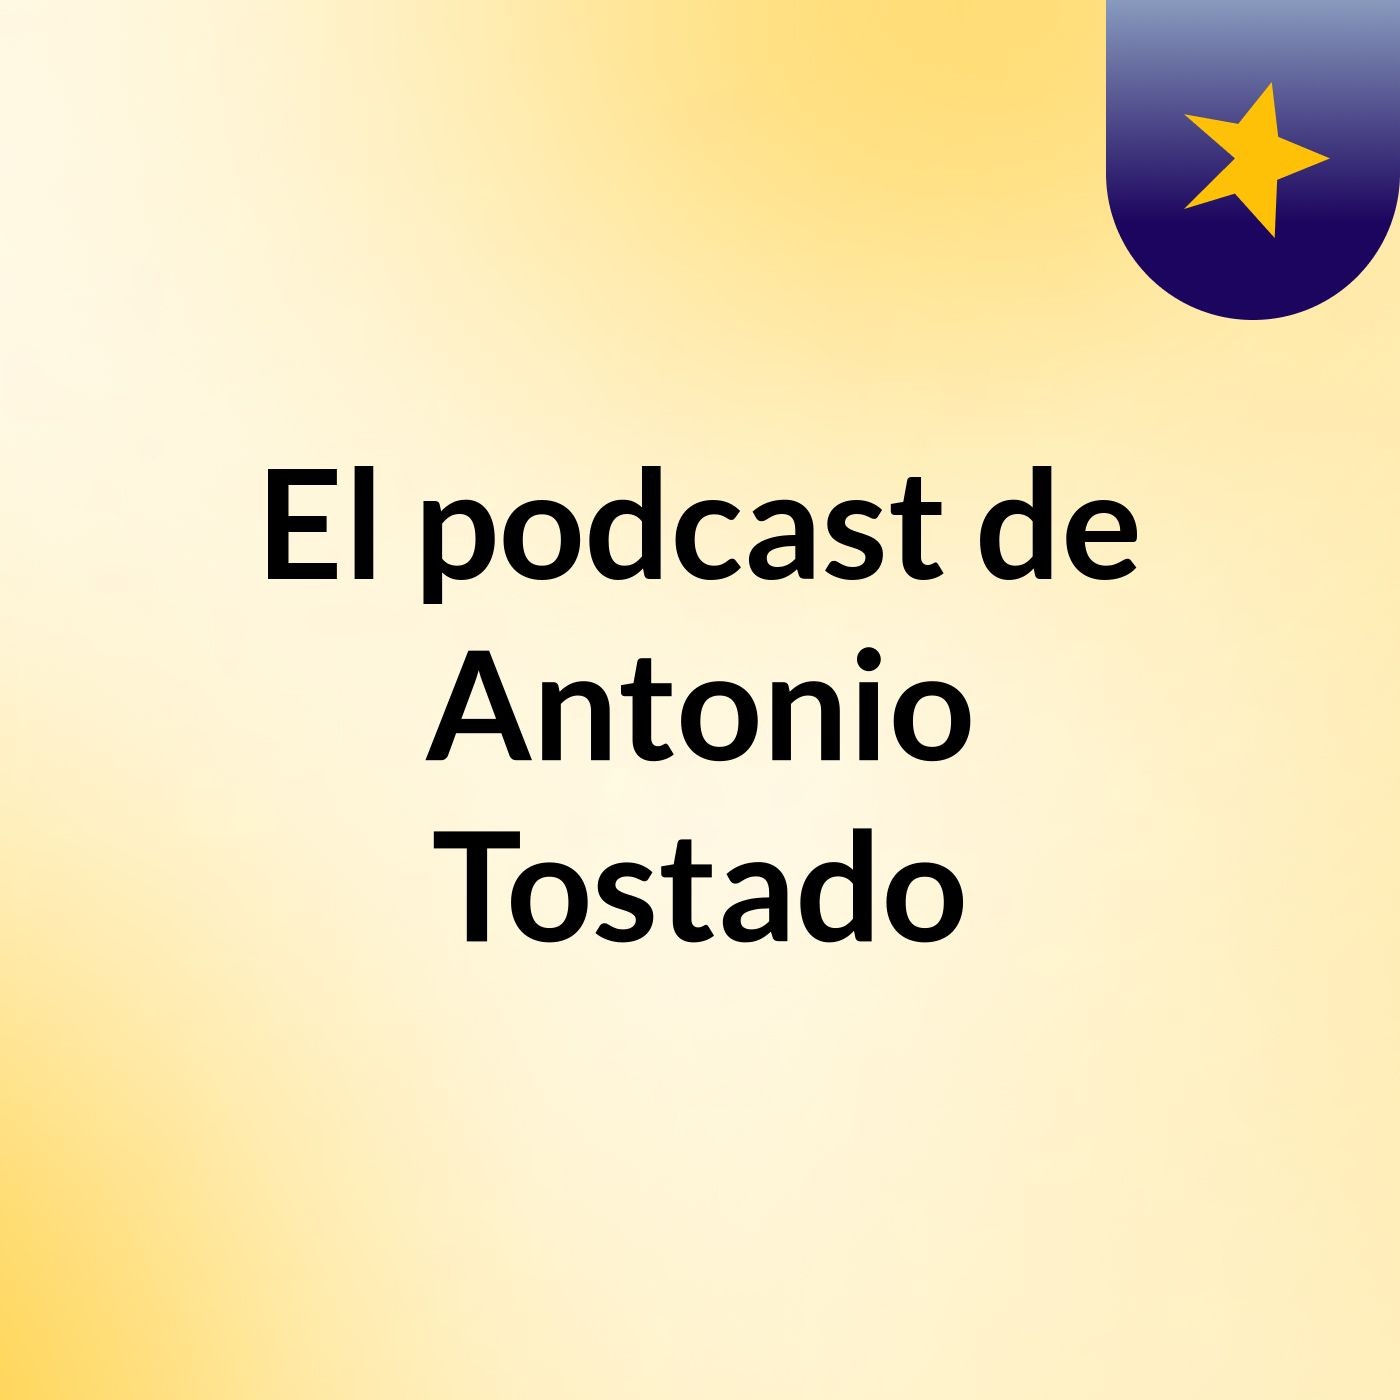 El podcast de Antonio Tostado